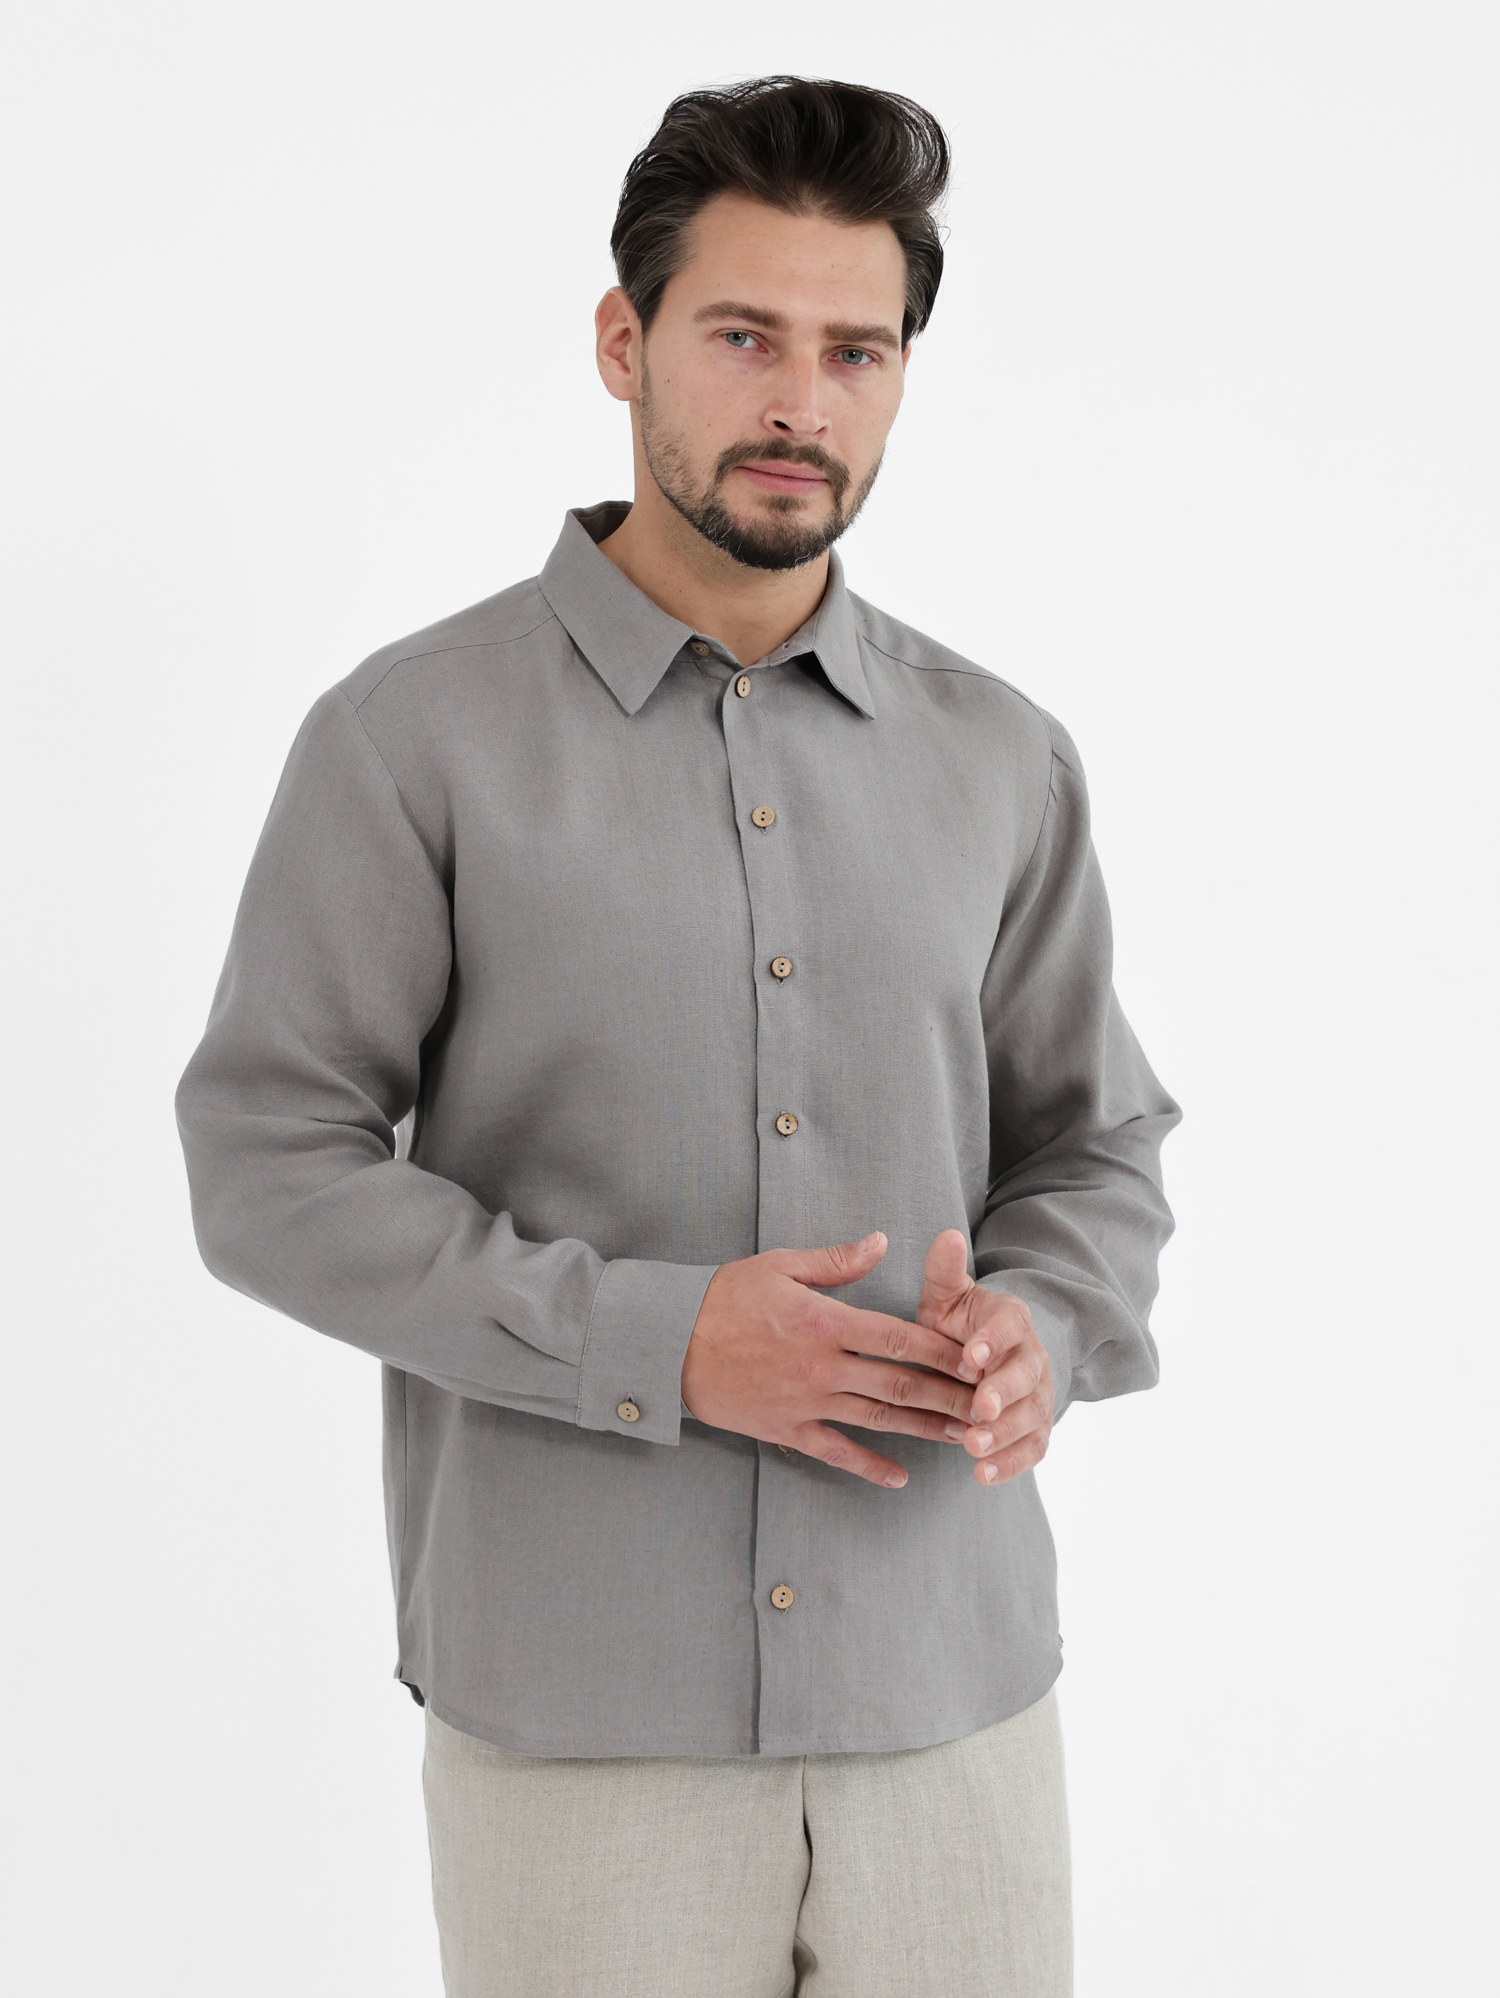 Men's shirt made of linen